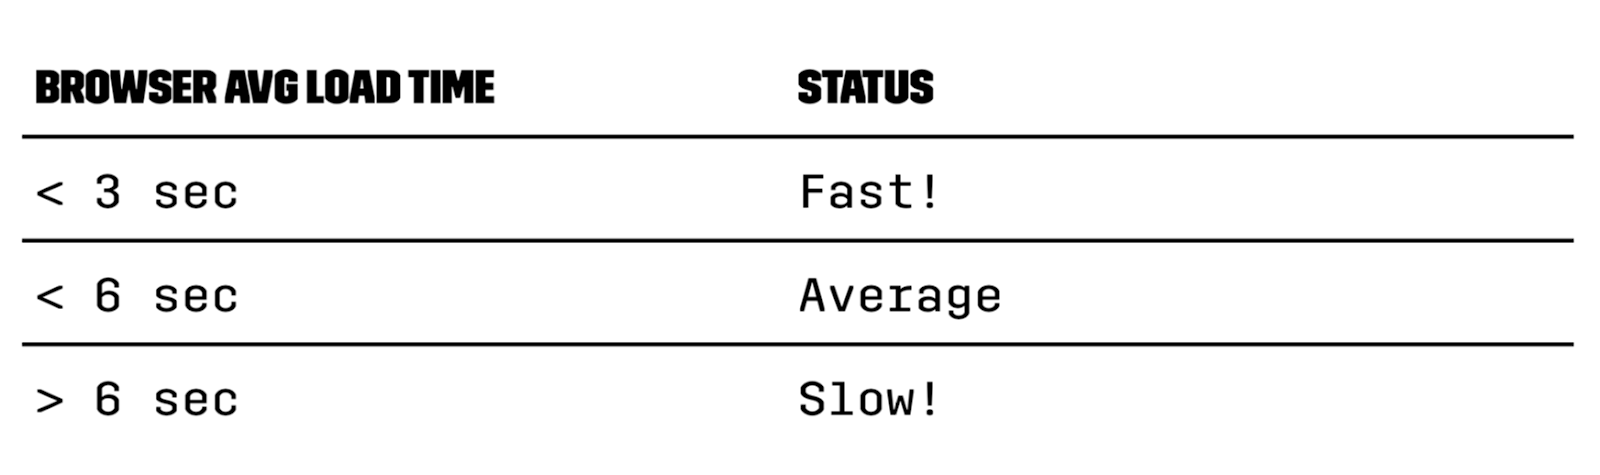 Average browser load time